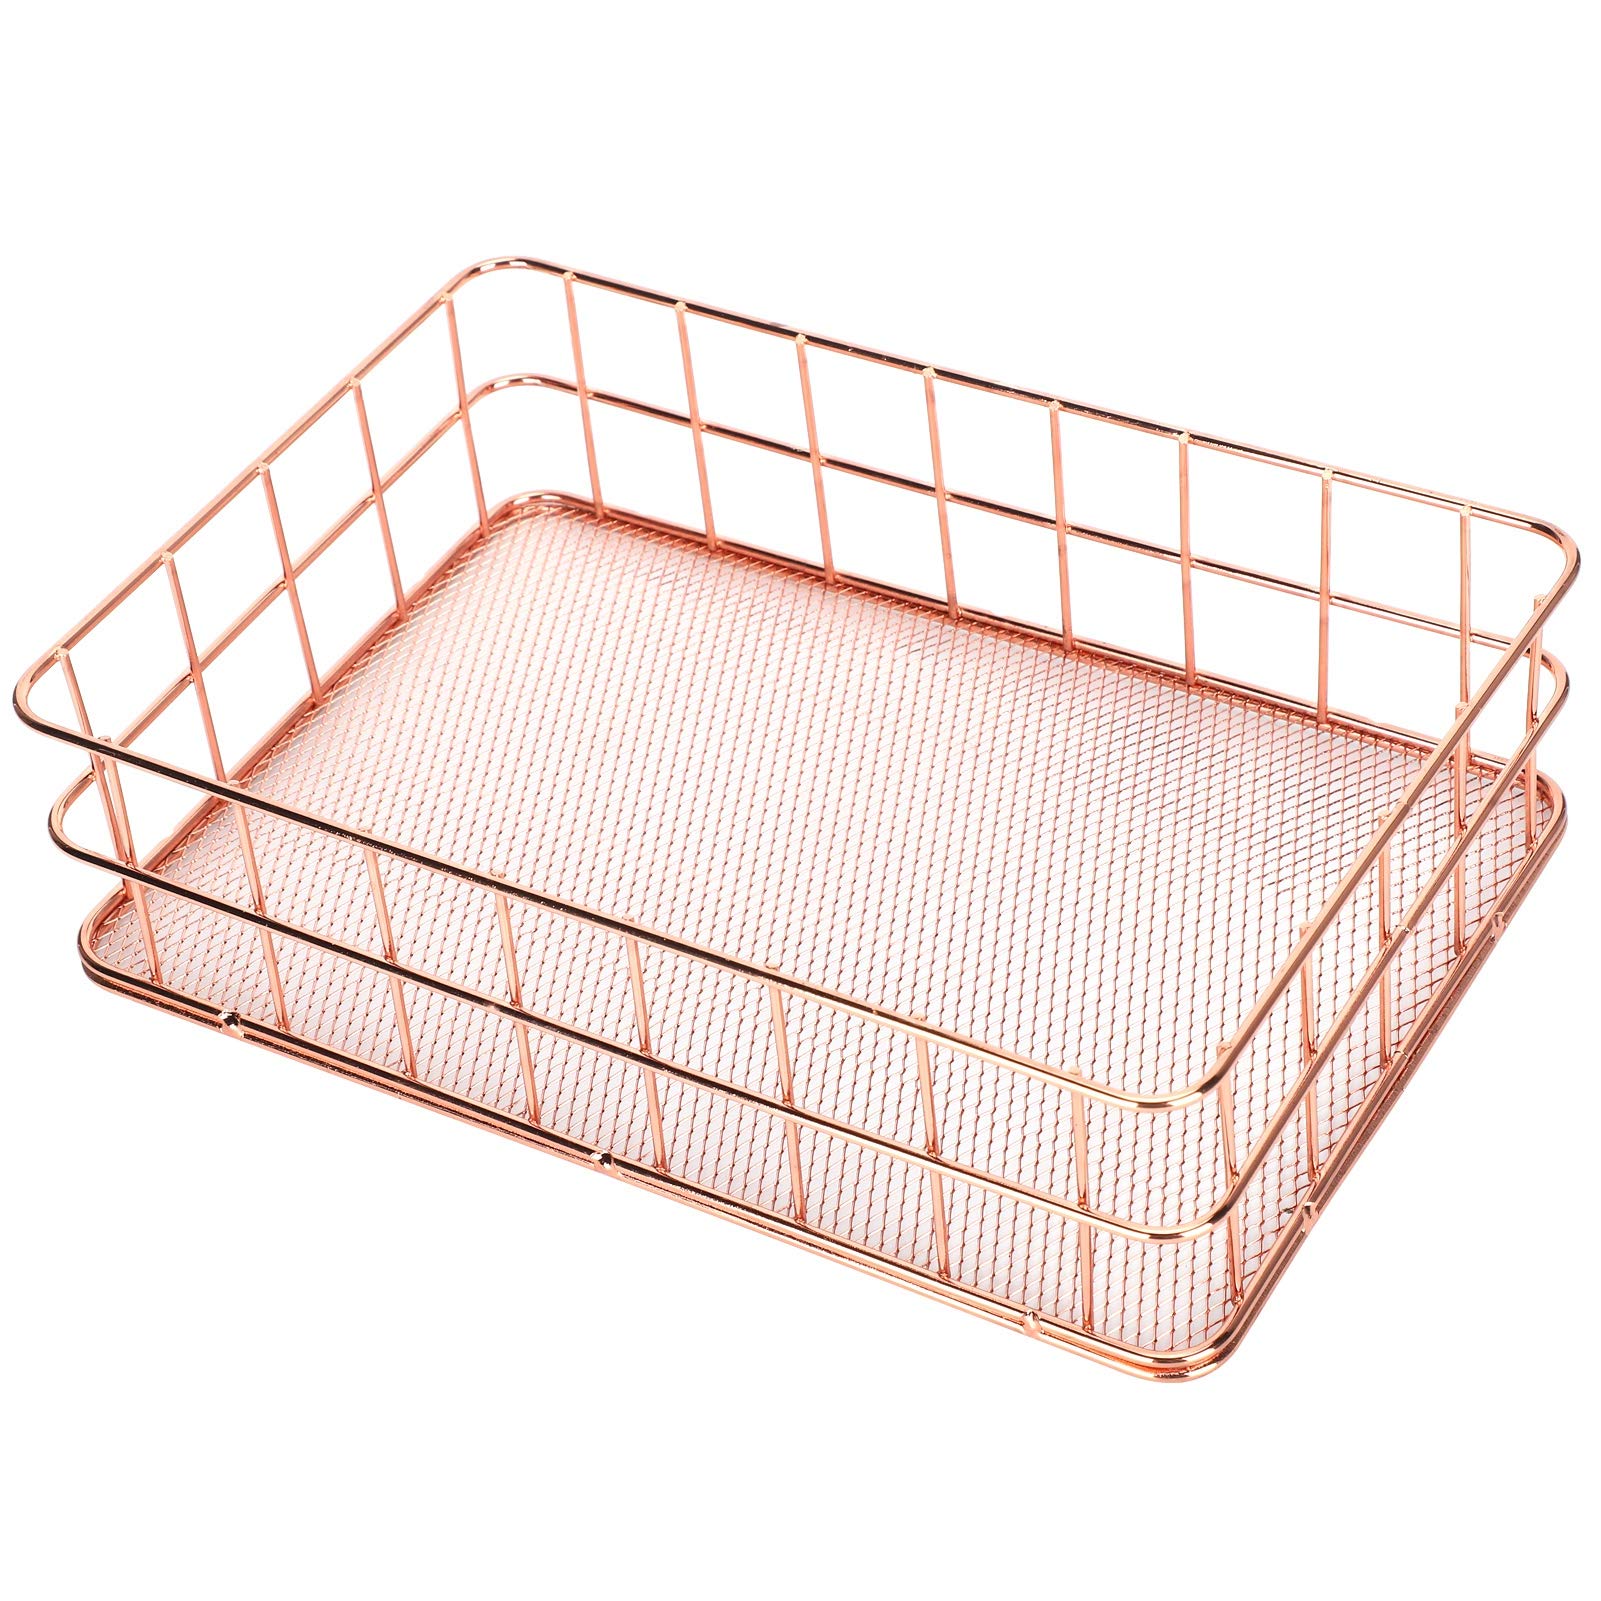 Stainless Steel Metal Wire Storage Baskets for Kitchen Shelf